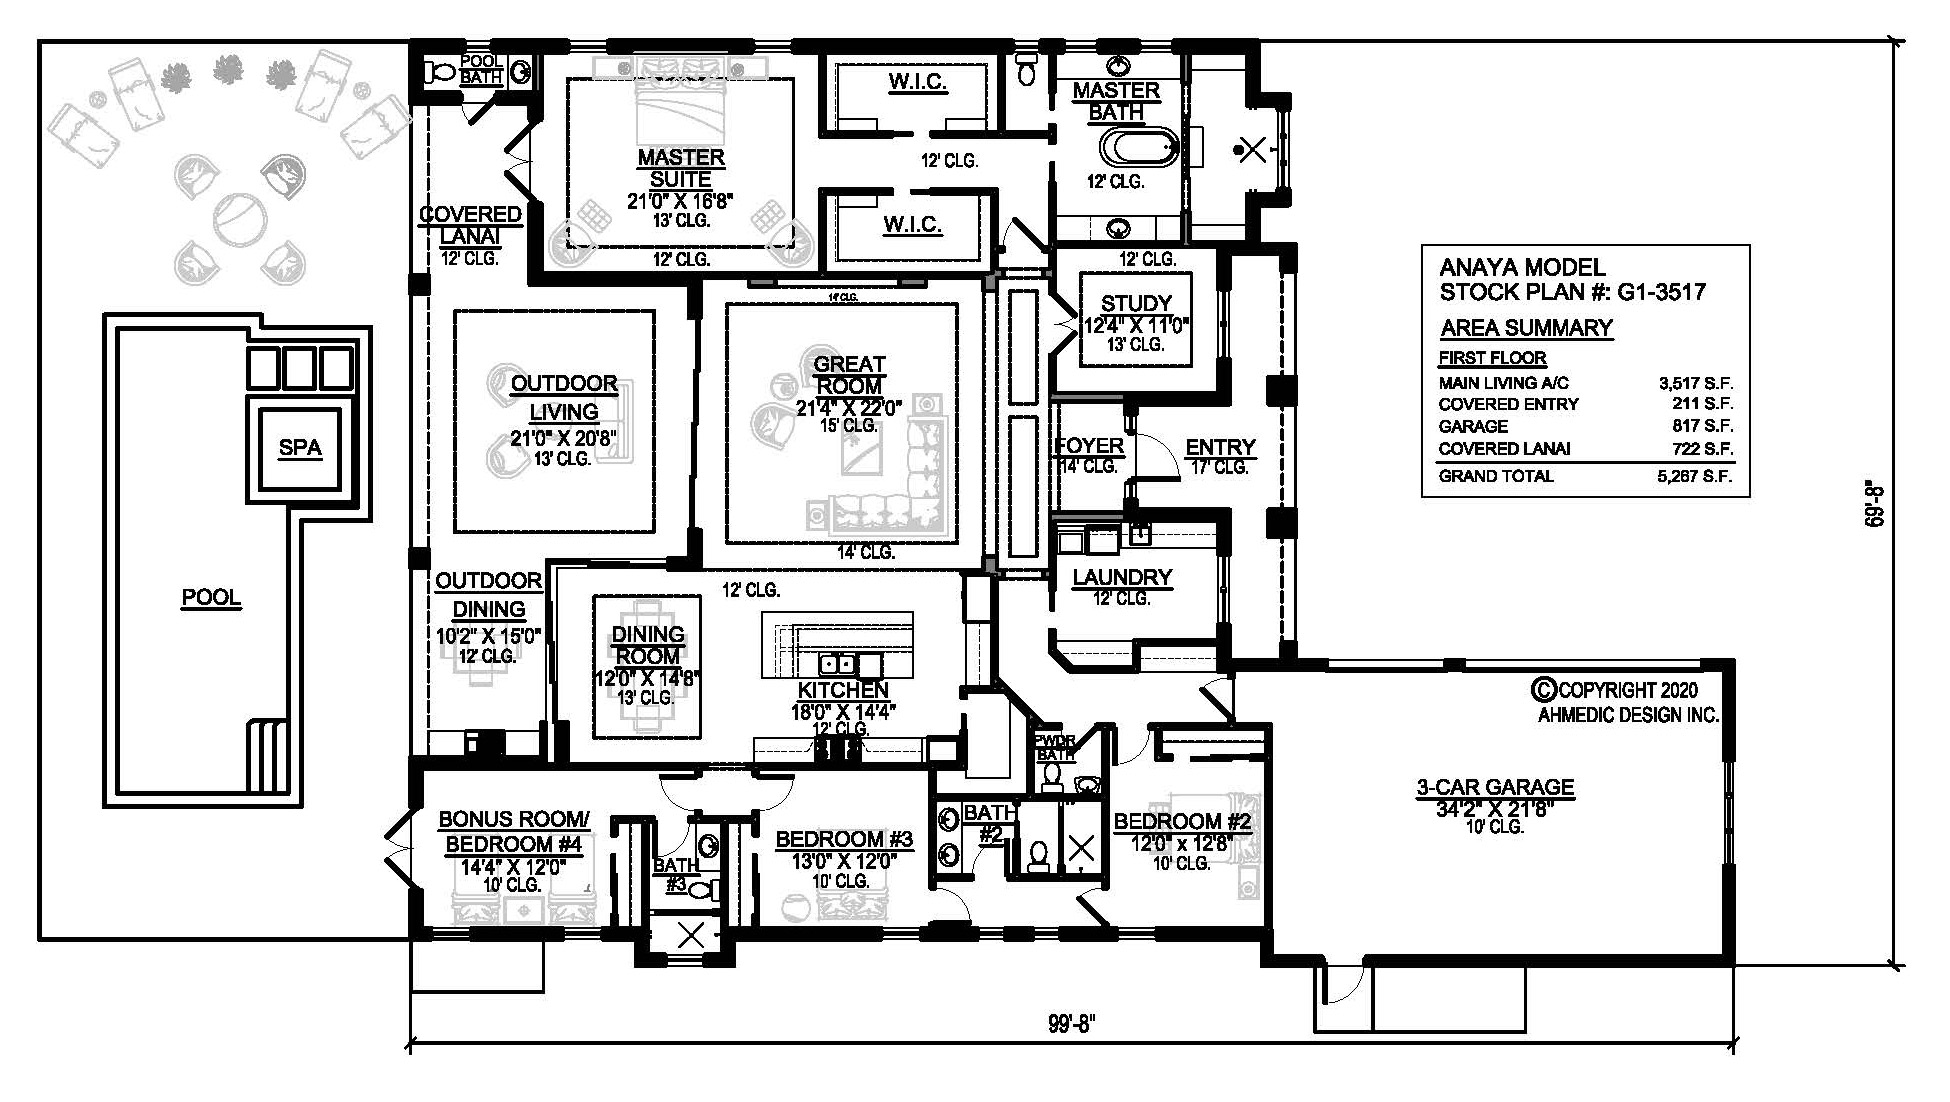 G1-3517 Floor Plan